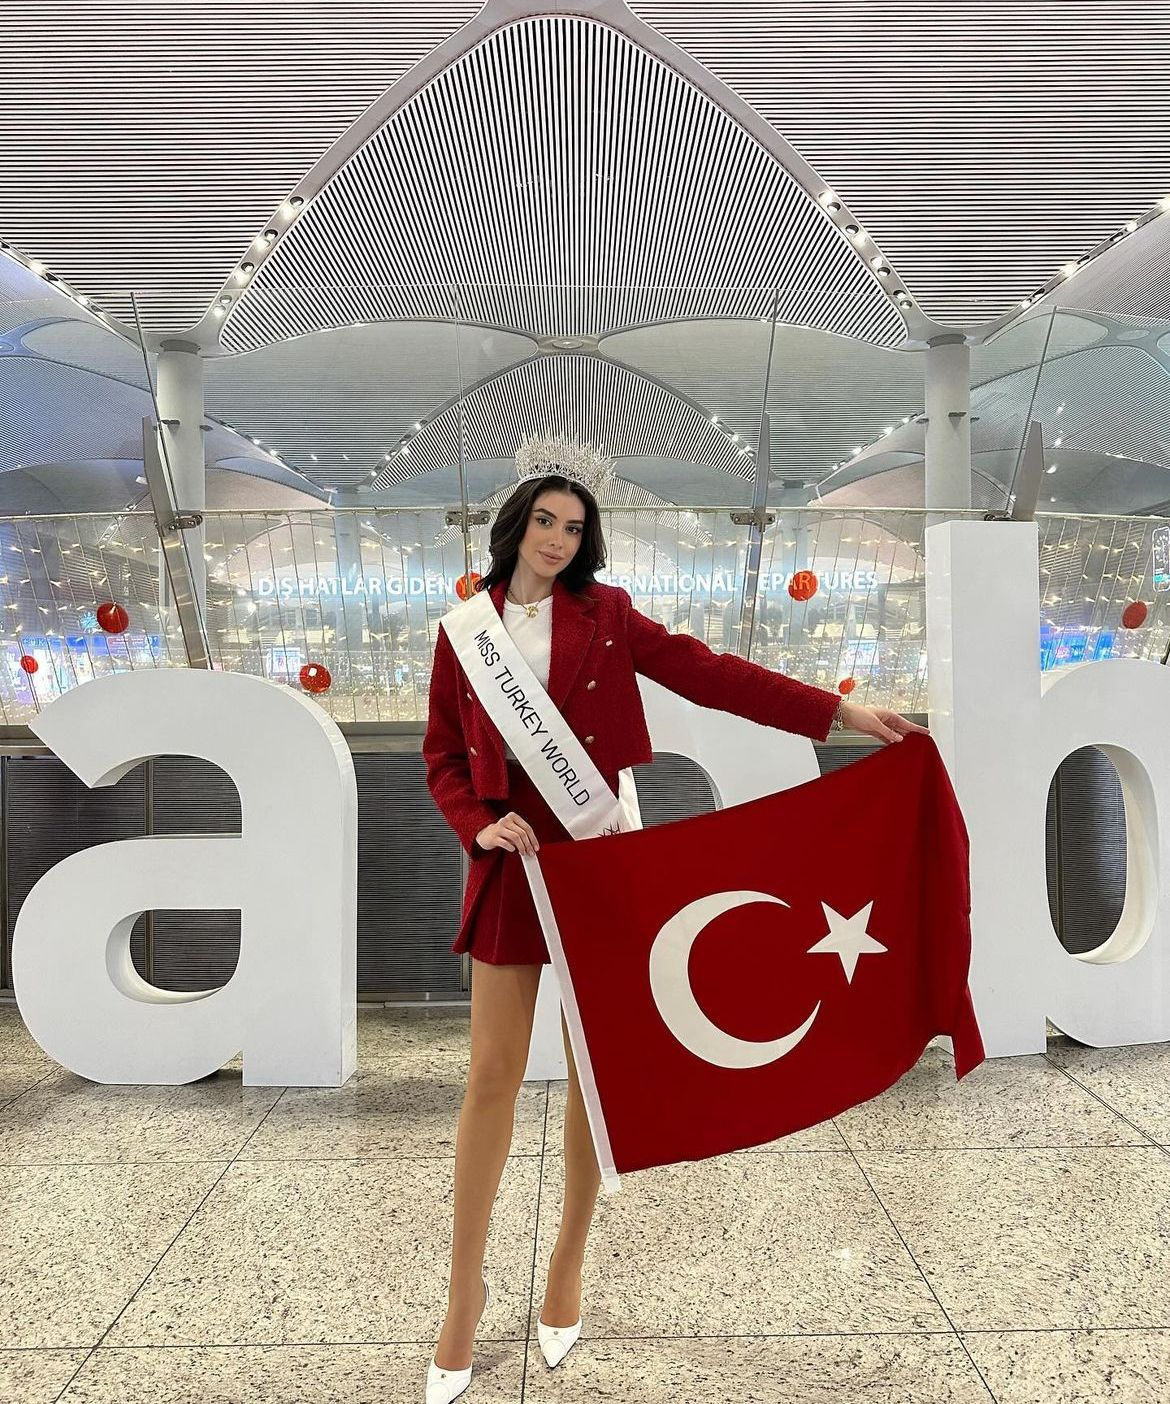 Türkiye birincisi dünya güzeli olma yolunda